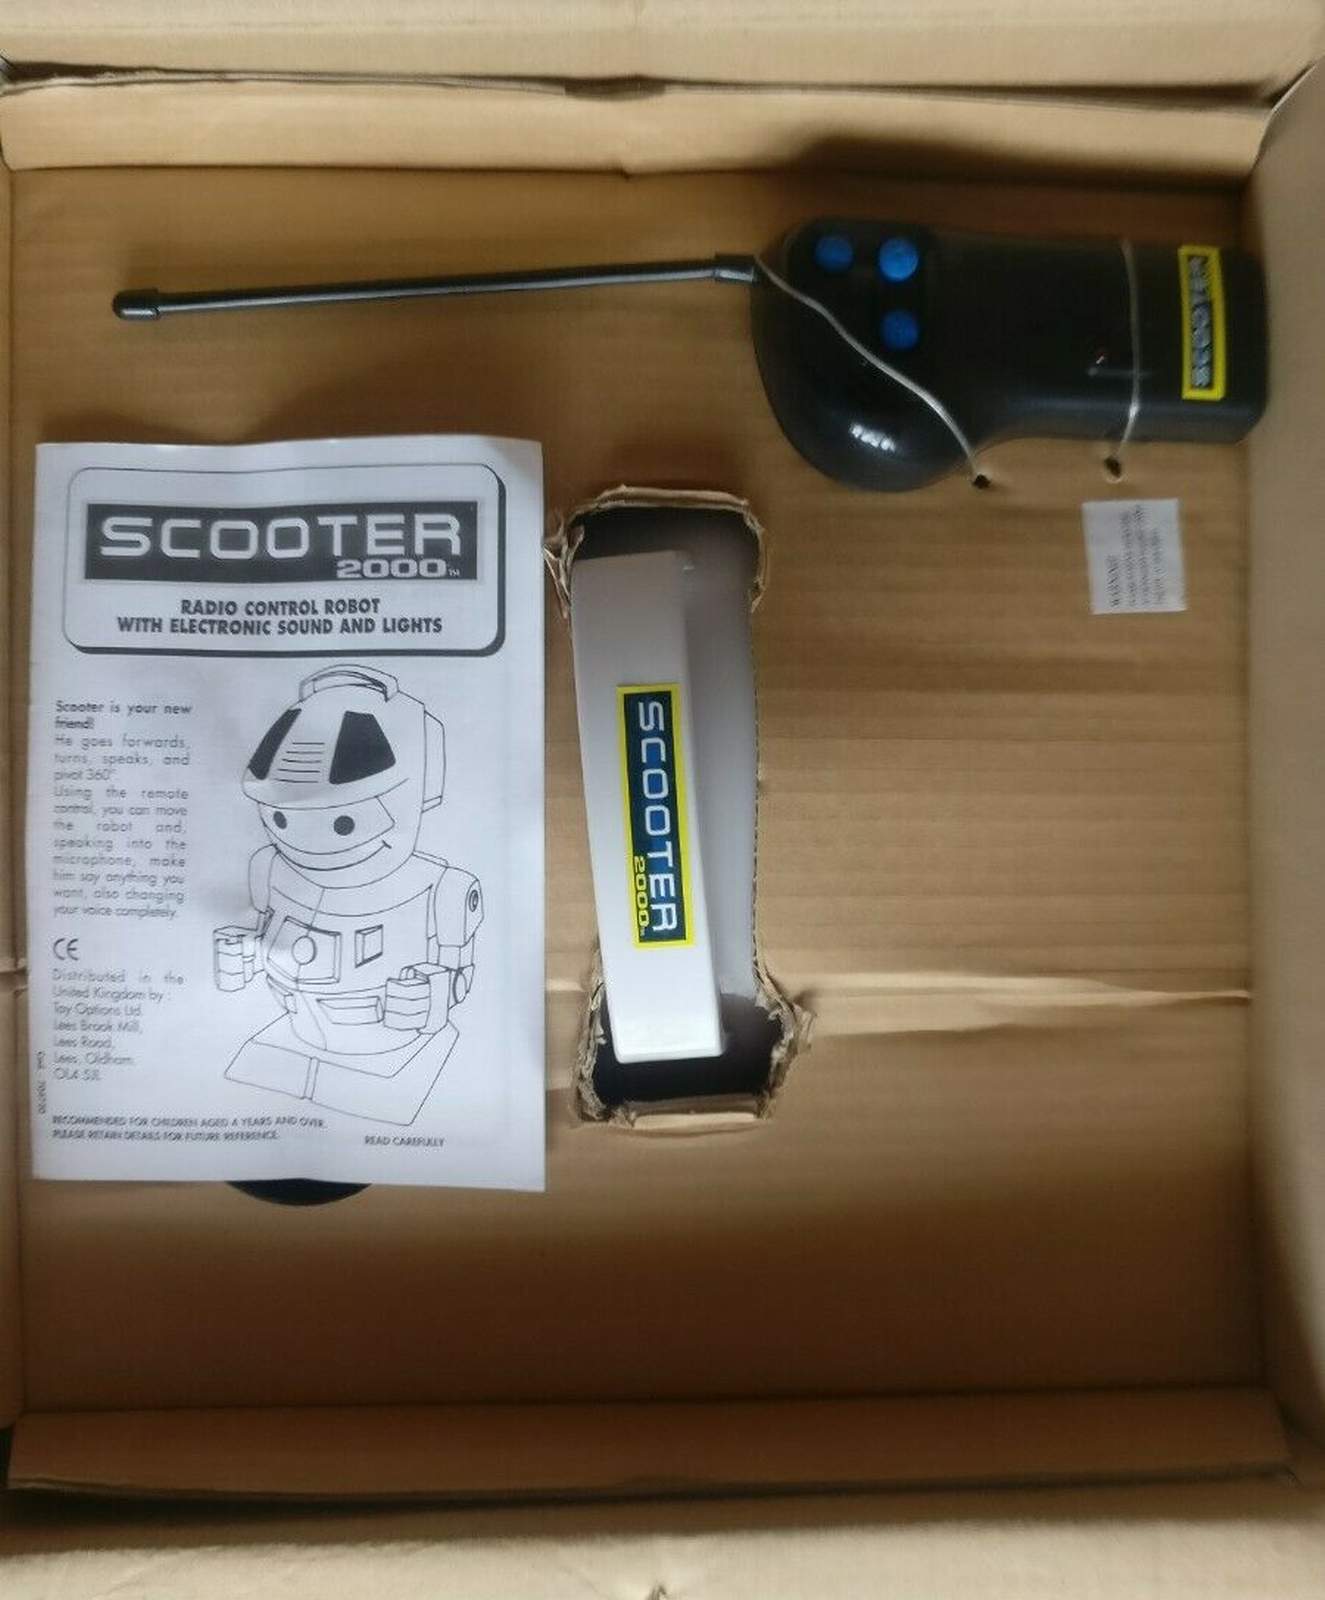 Sco0ter 2000 Robot